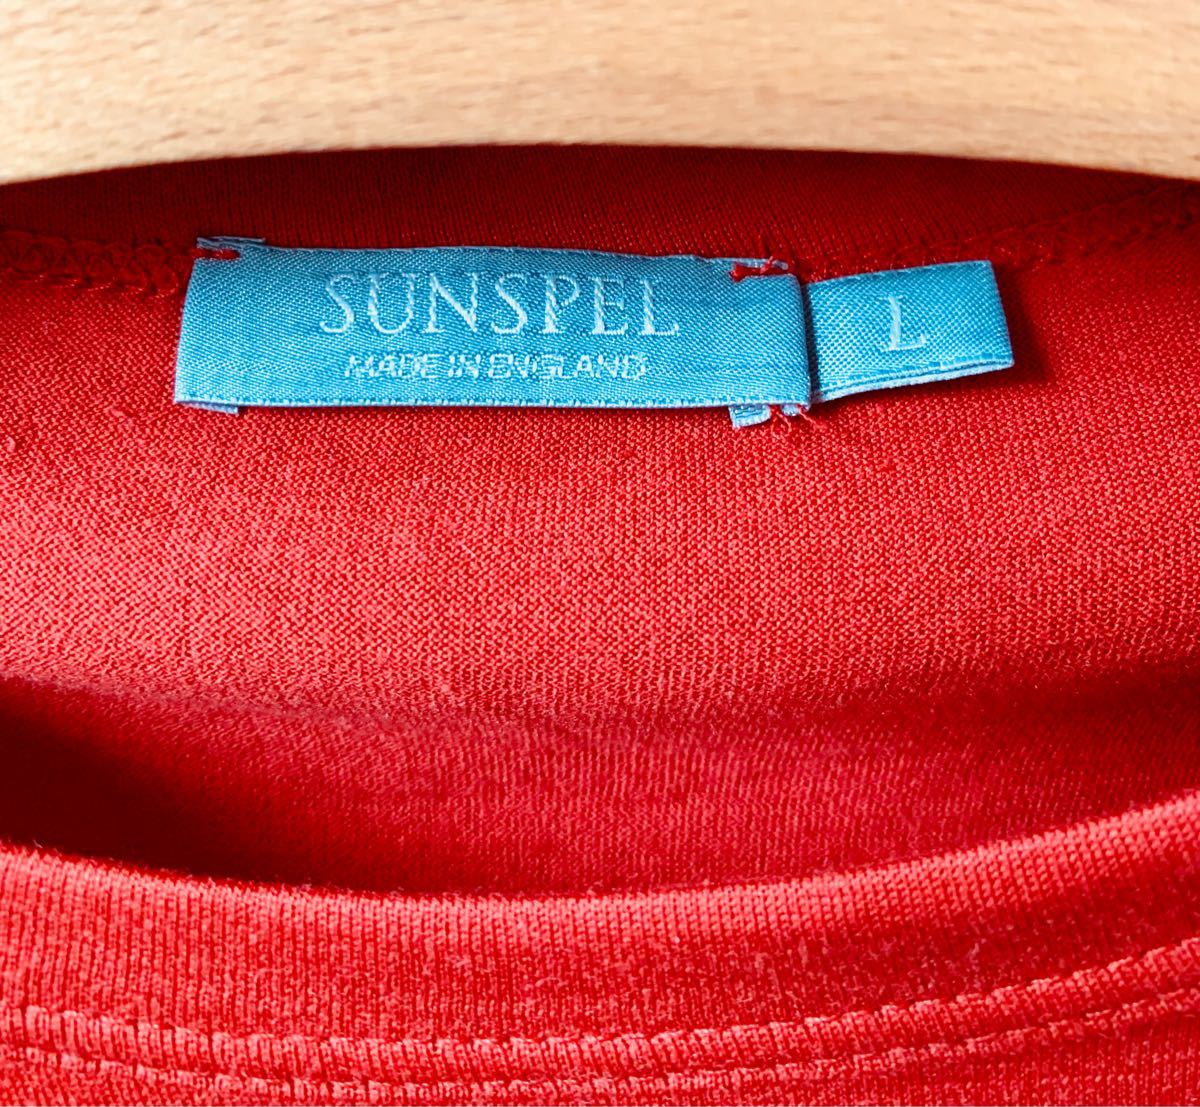 Sunspel サンスペル イギリス製の赤い長袖シャツ